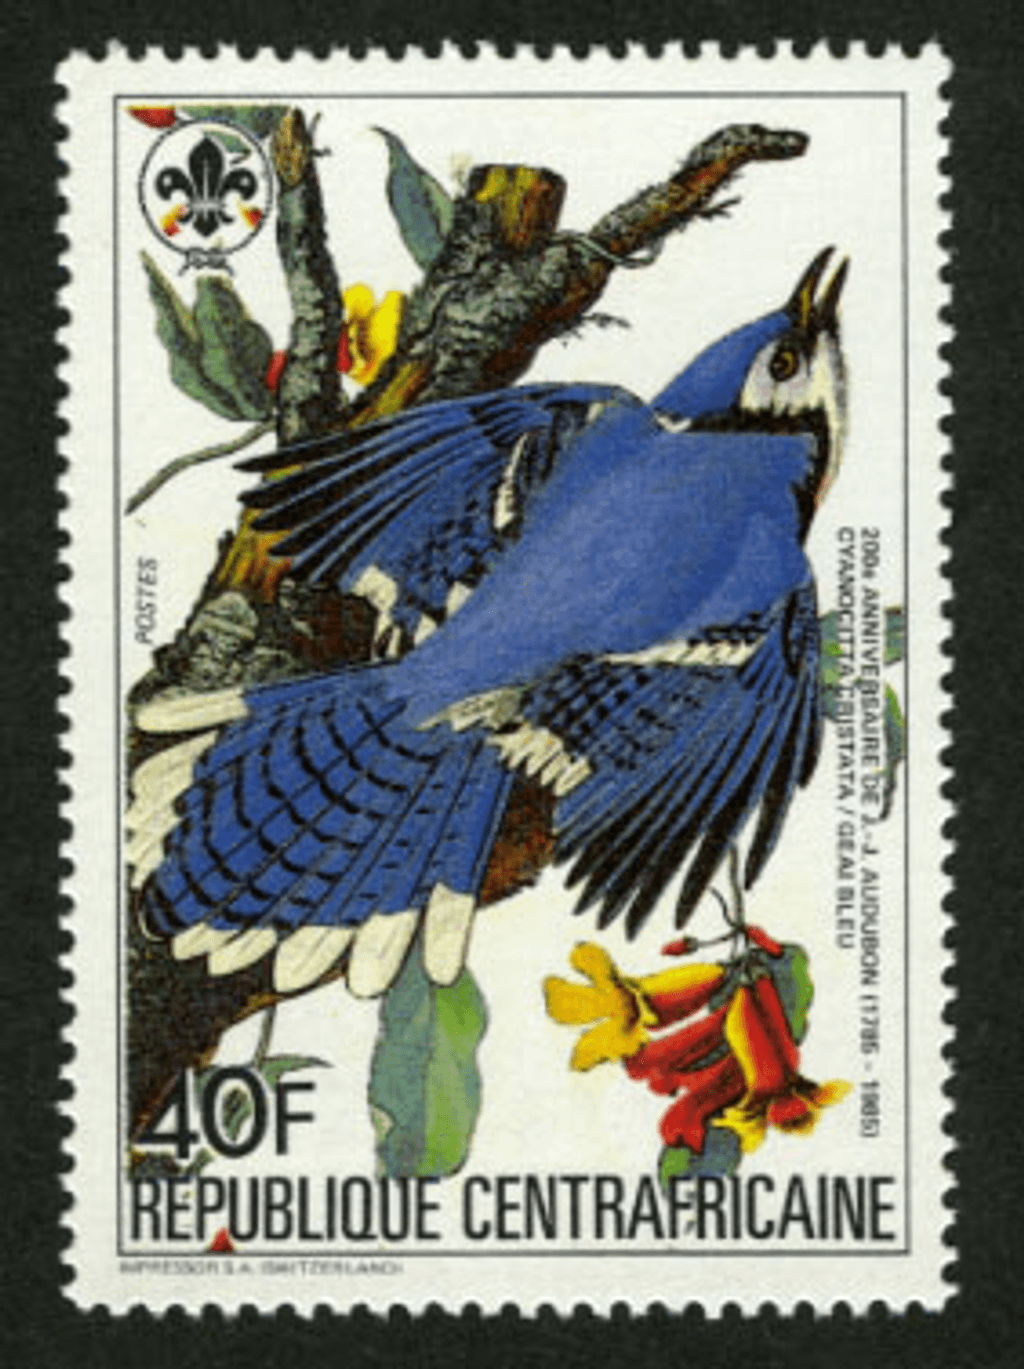 Birthday of John James Audubon 1985